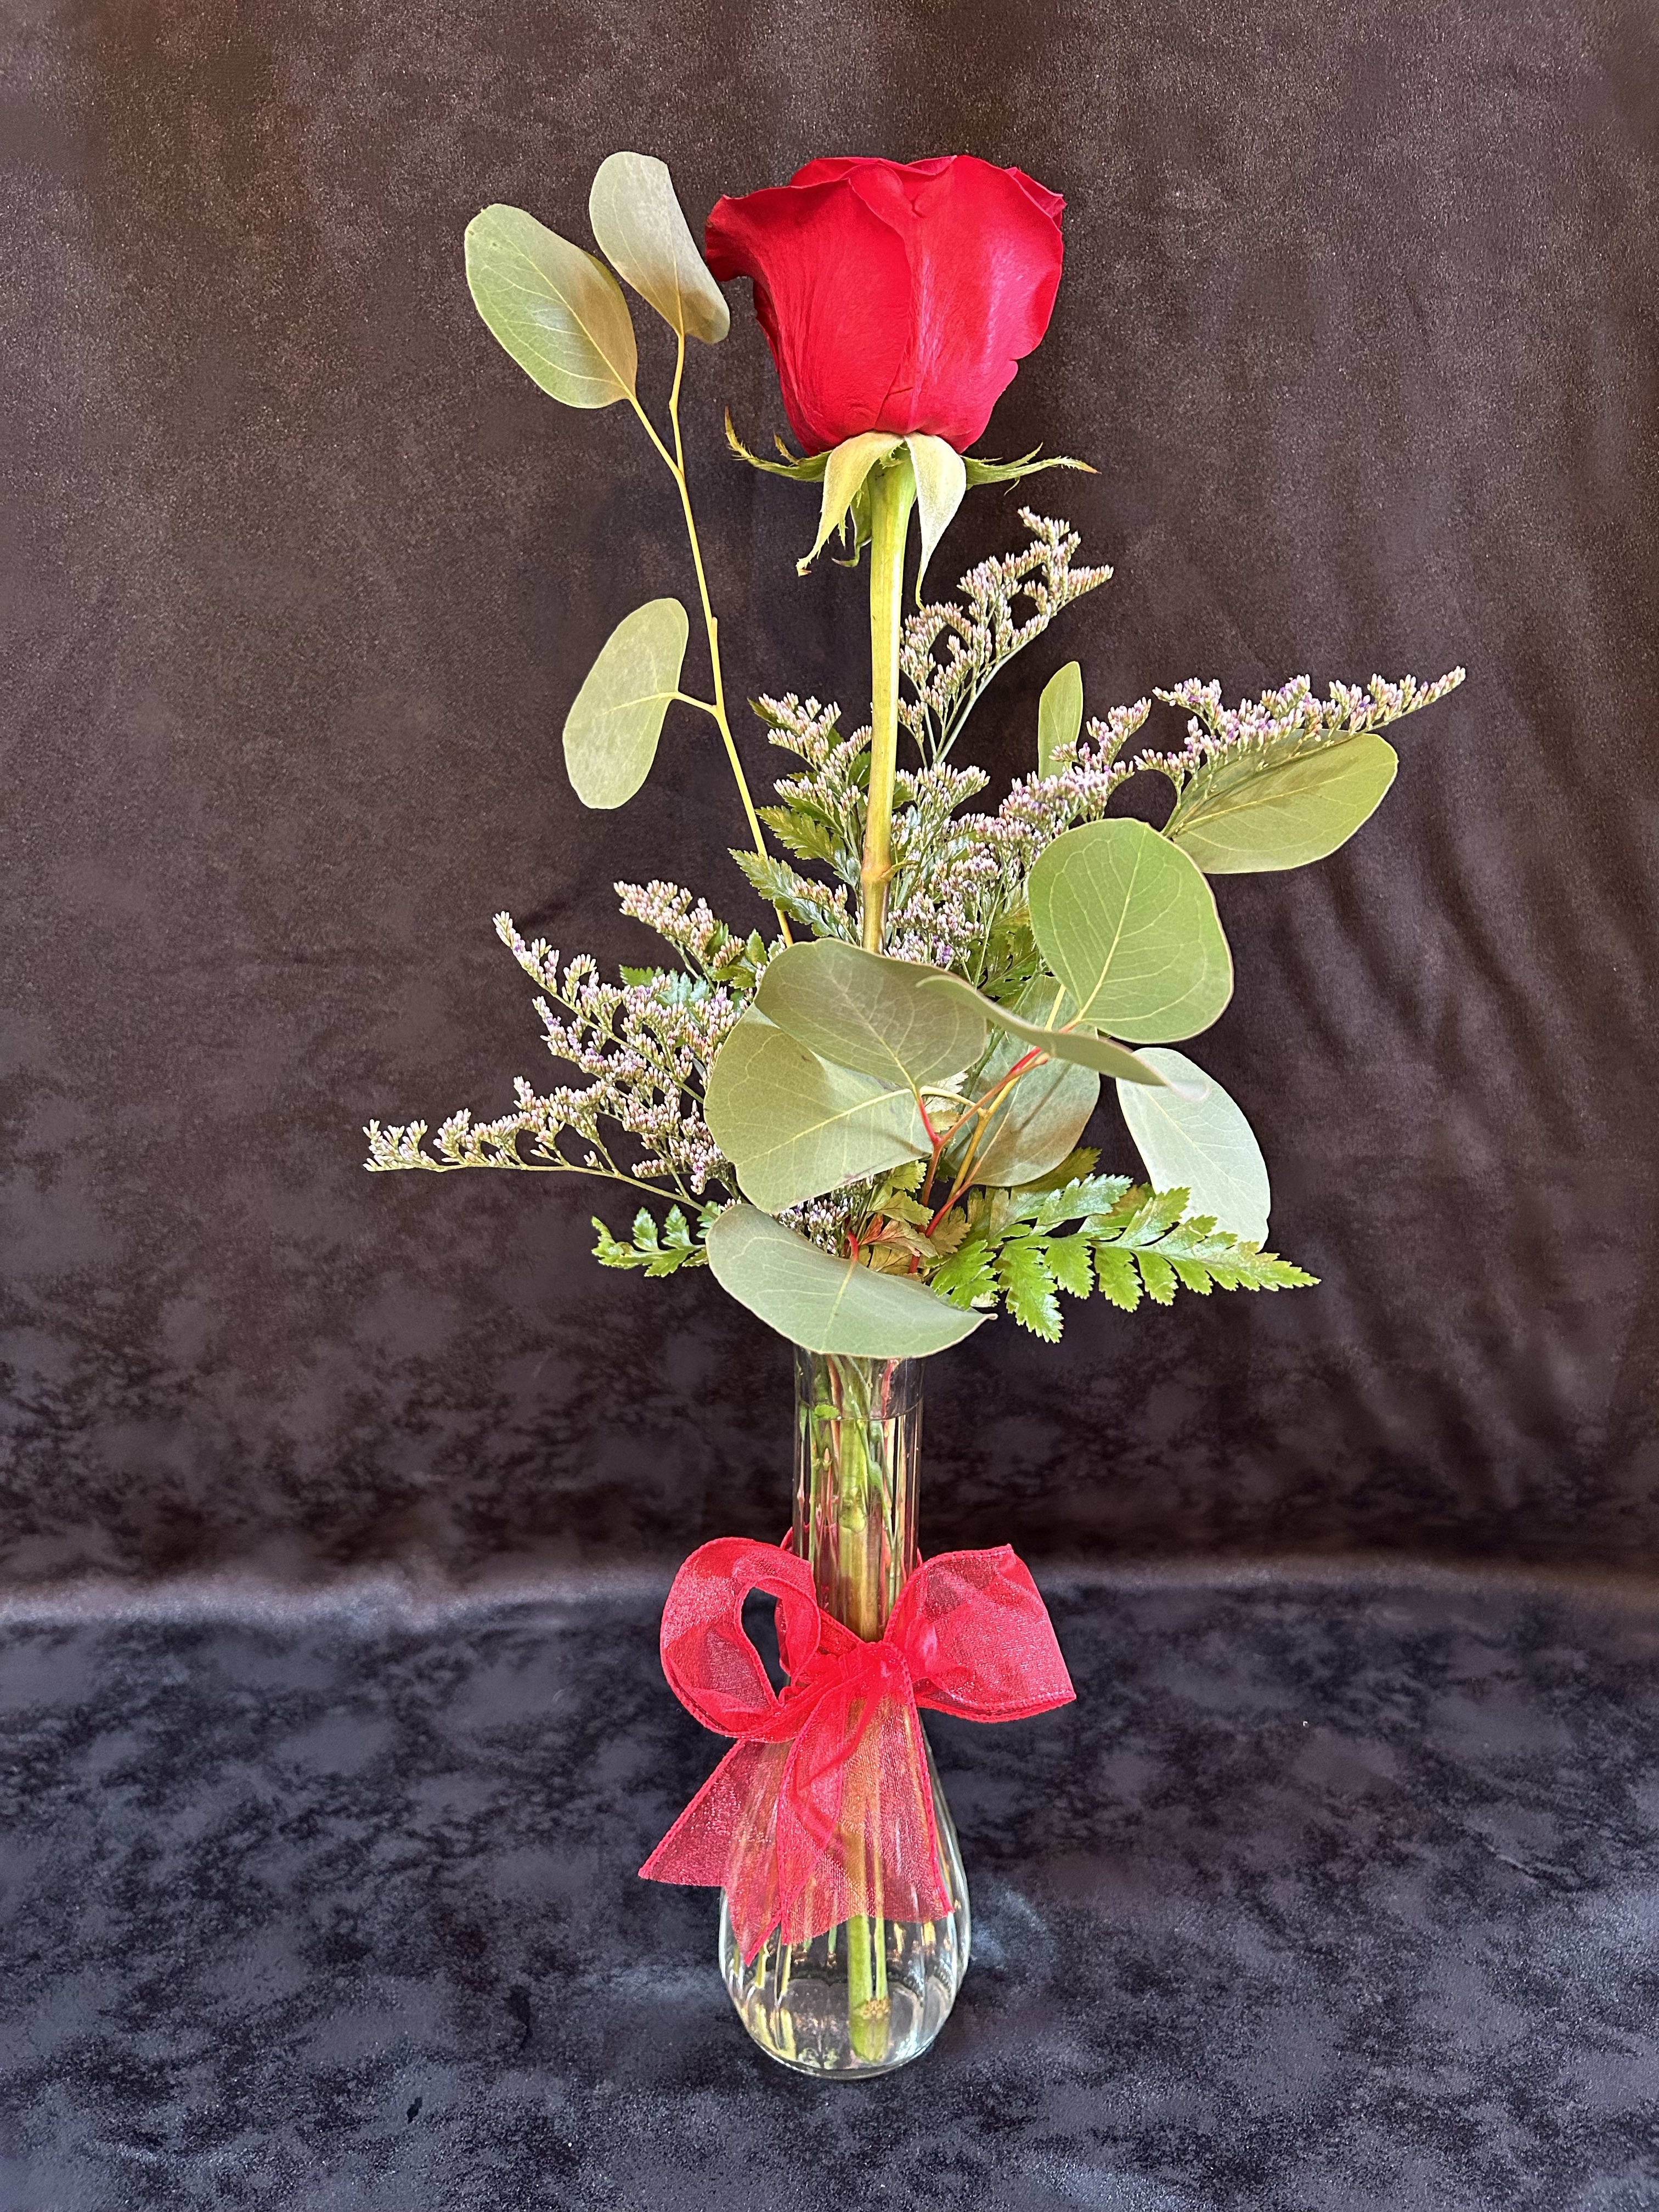 Rose Bloom - Red Rose arranged in a vase.